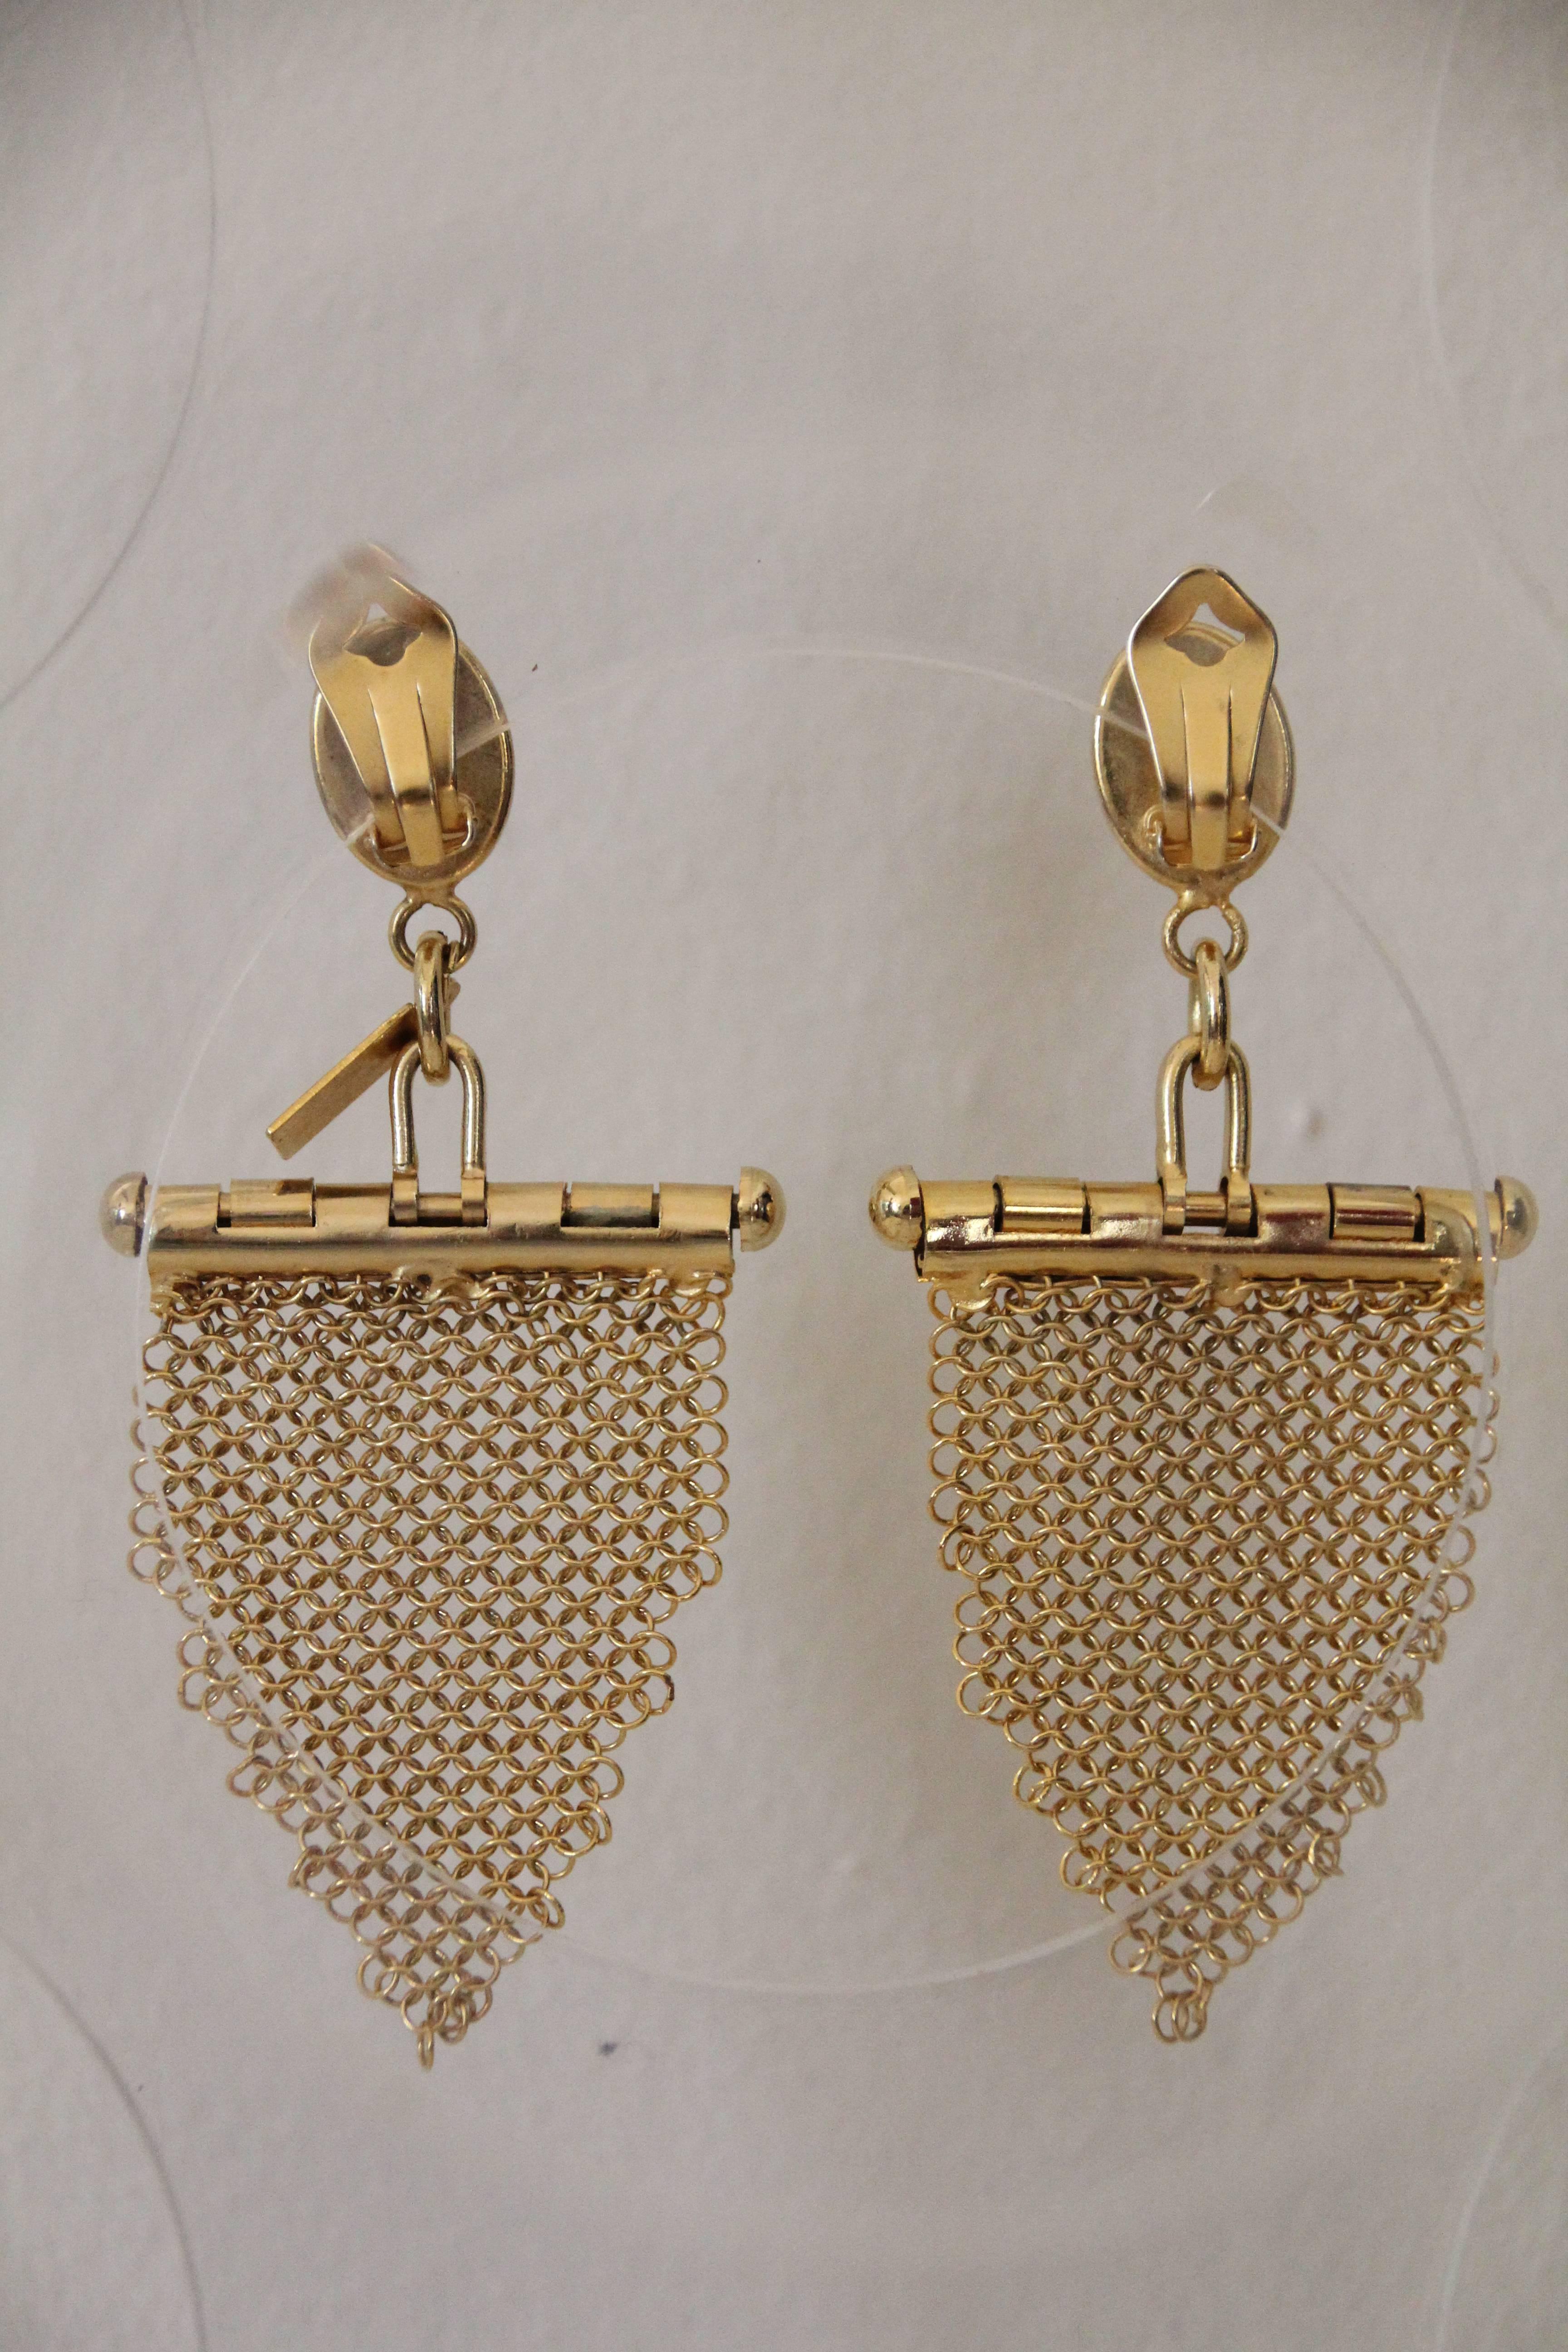 boucles d'oreilles chandelier en forme de frange de cotte de mailles en métal doré U. Correani des années 1980. La frange pendante est attachée à une barre articulée joliment conçue pour une grande liberté de mouvement. Le clip est surmonté d'un